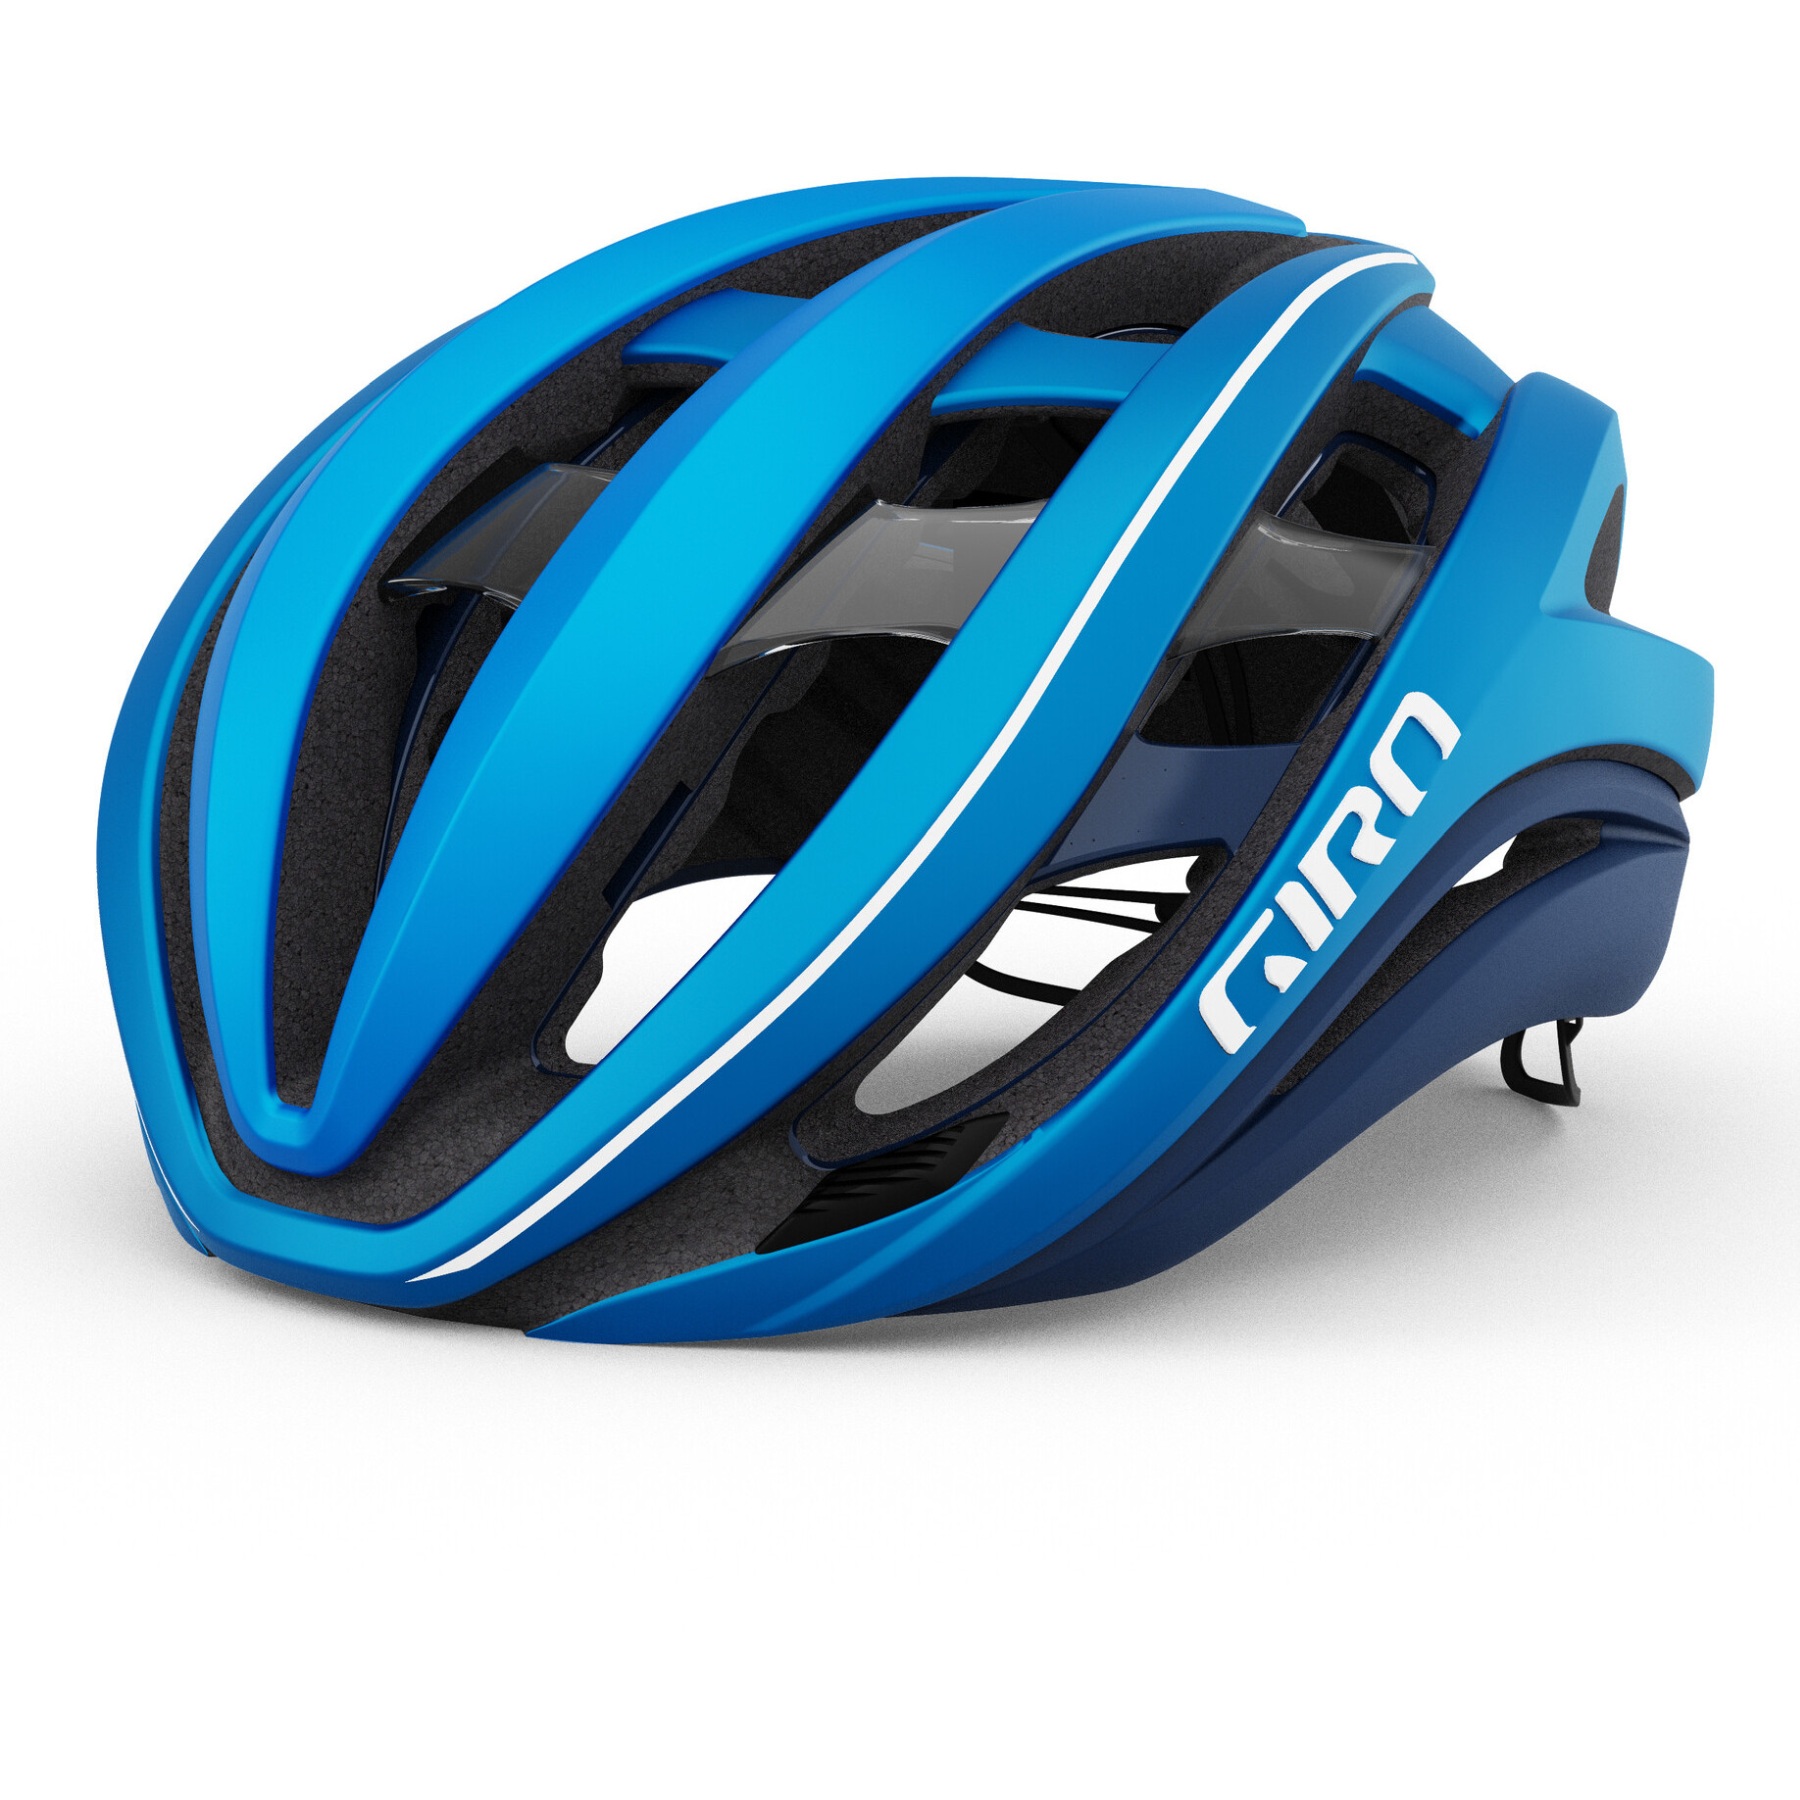 Produktbild von Giro Aether Spherical MIPS Helm - matte ano blue